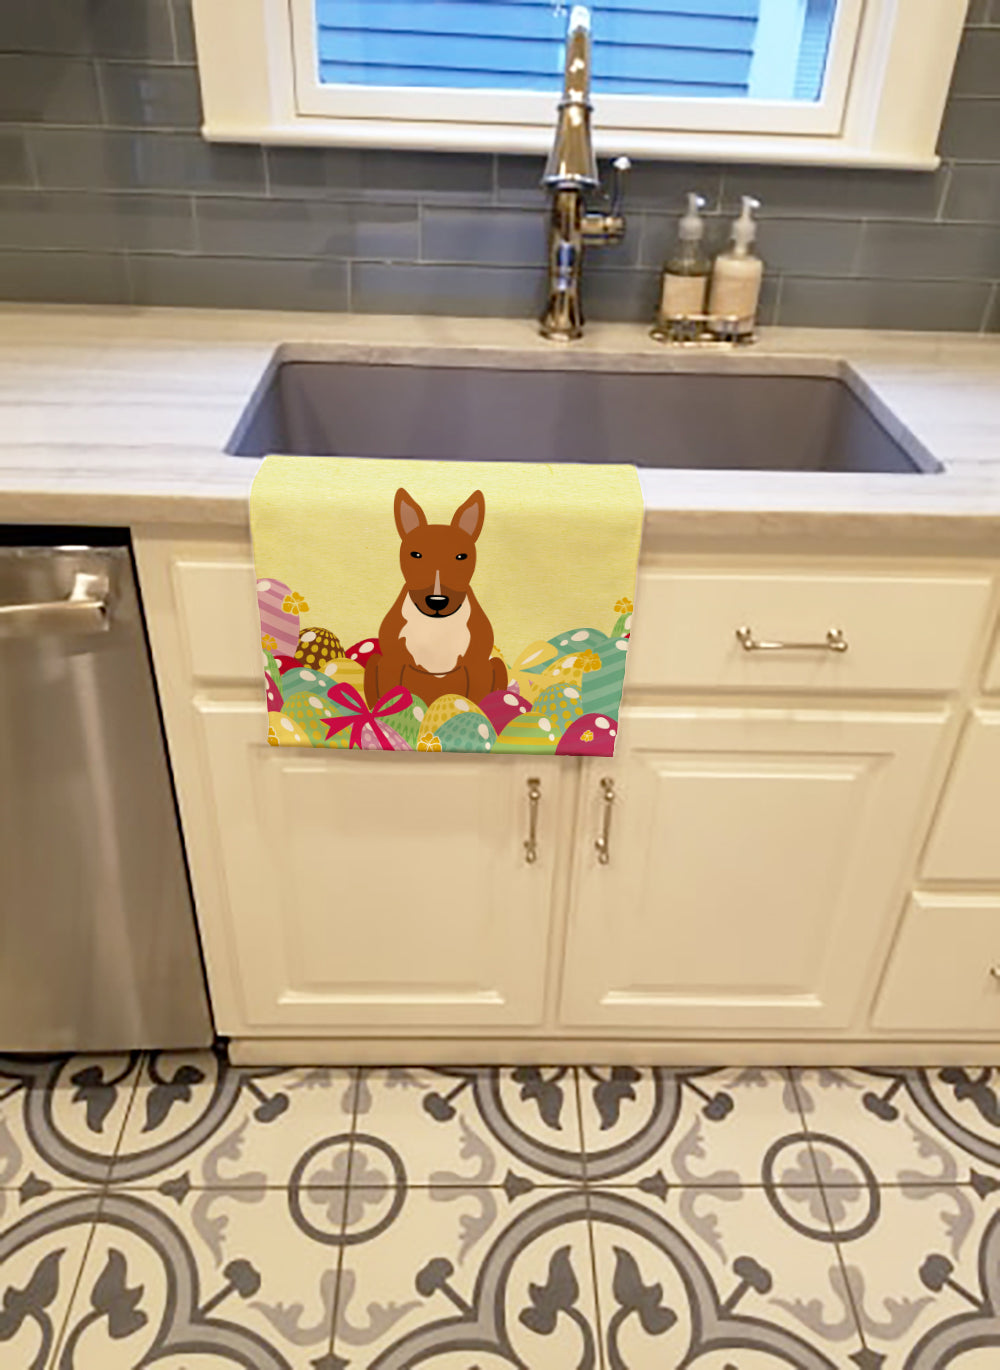 Easter Eggs Bull Terrier Red Kitchen Towel BB6134KTWL - the-store.com